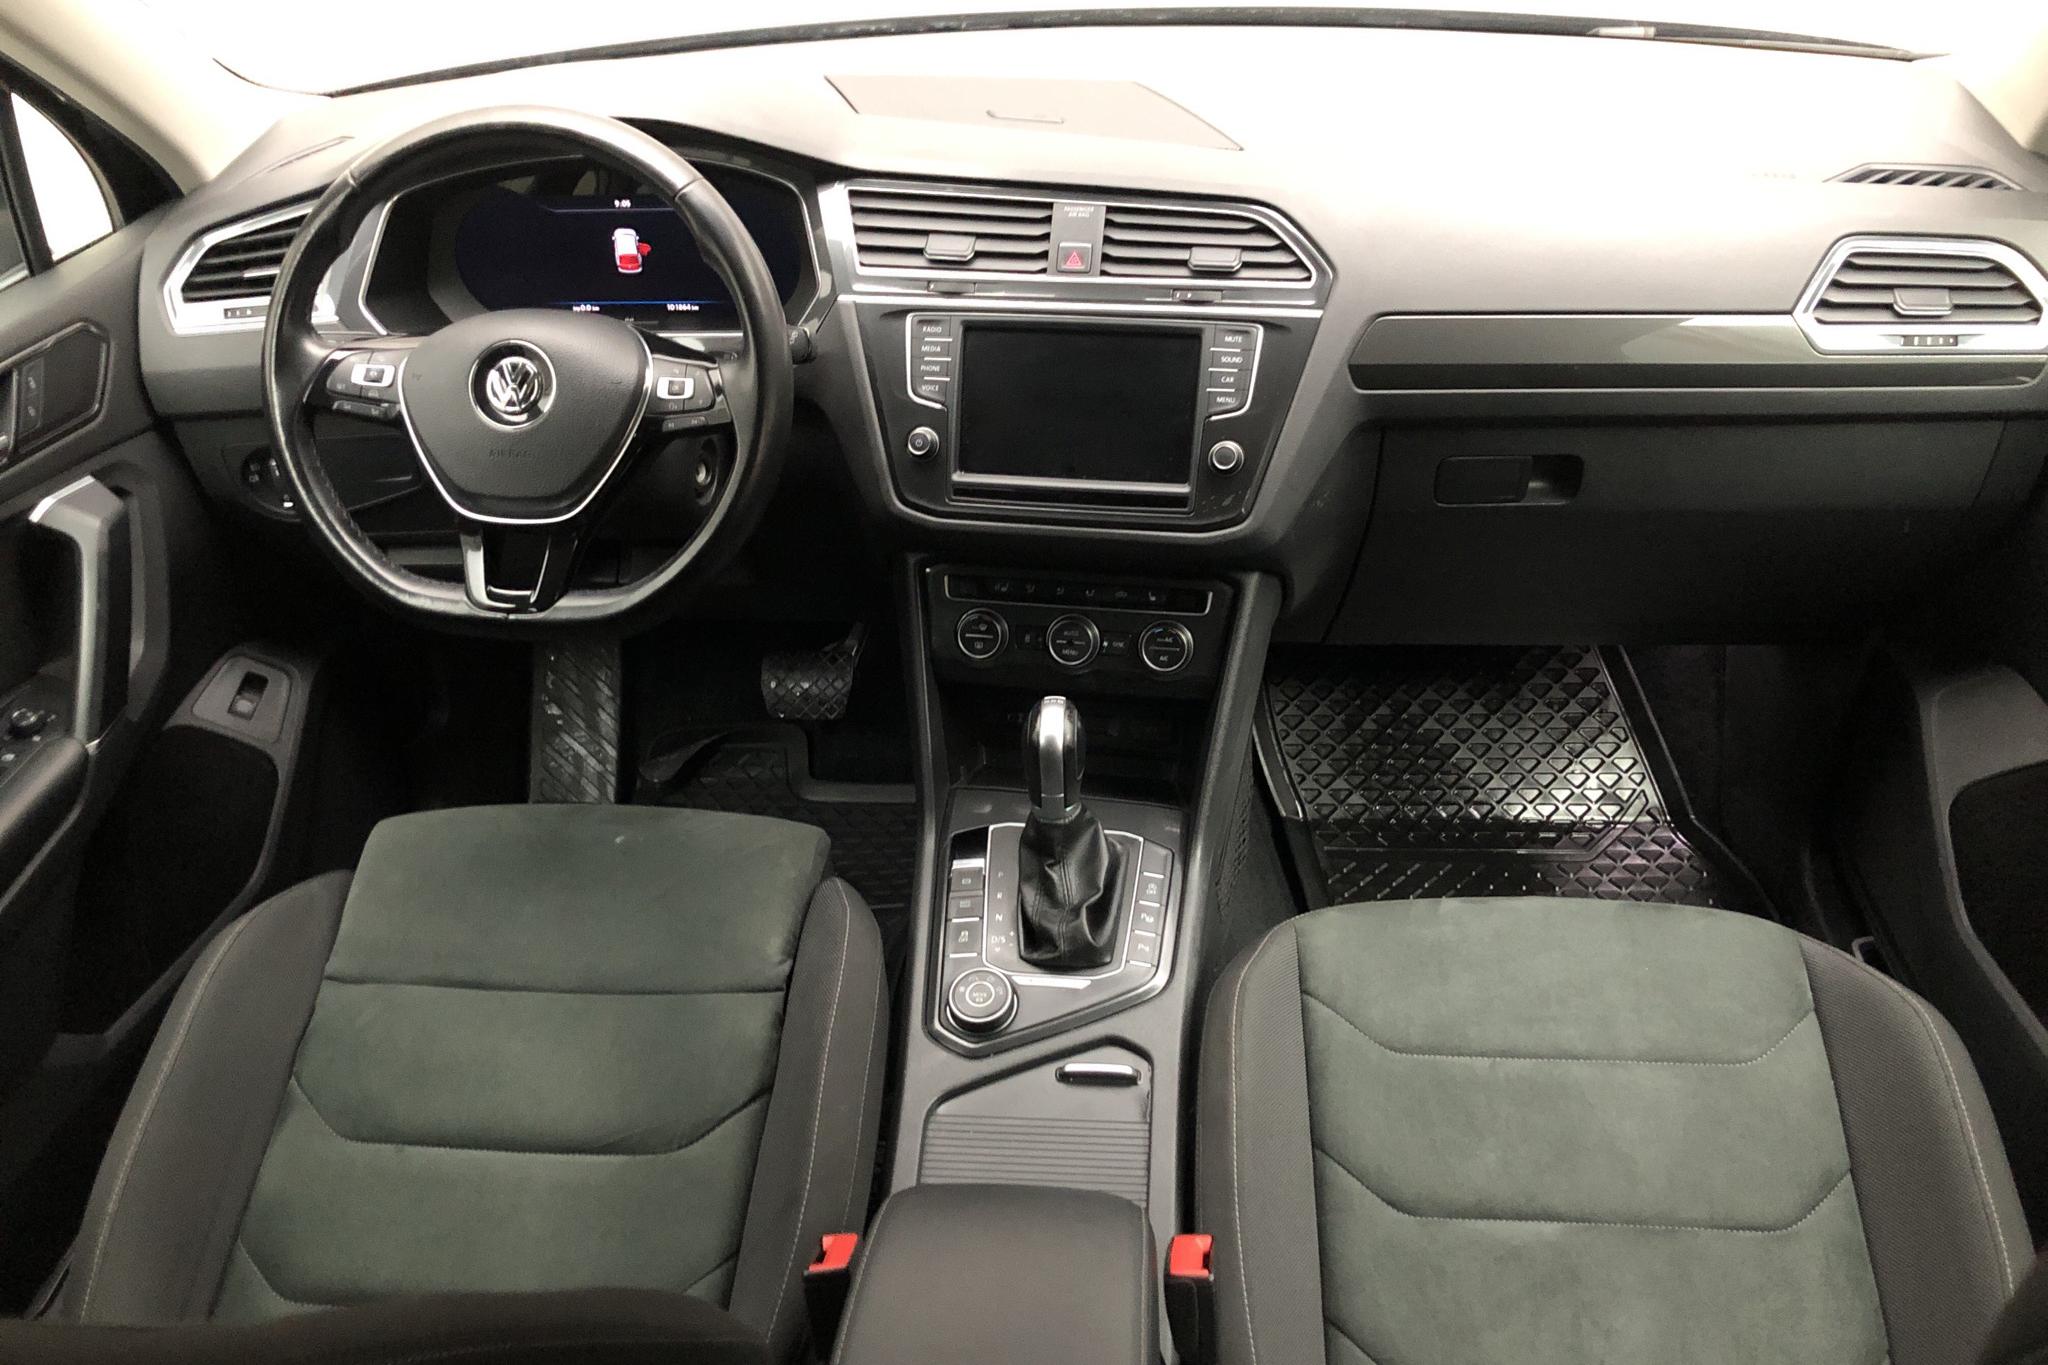 VW Tiguan 2.0 TDI 4MOTION (190hk) - 101 870 km - Automatic - black - 2017